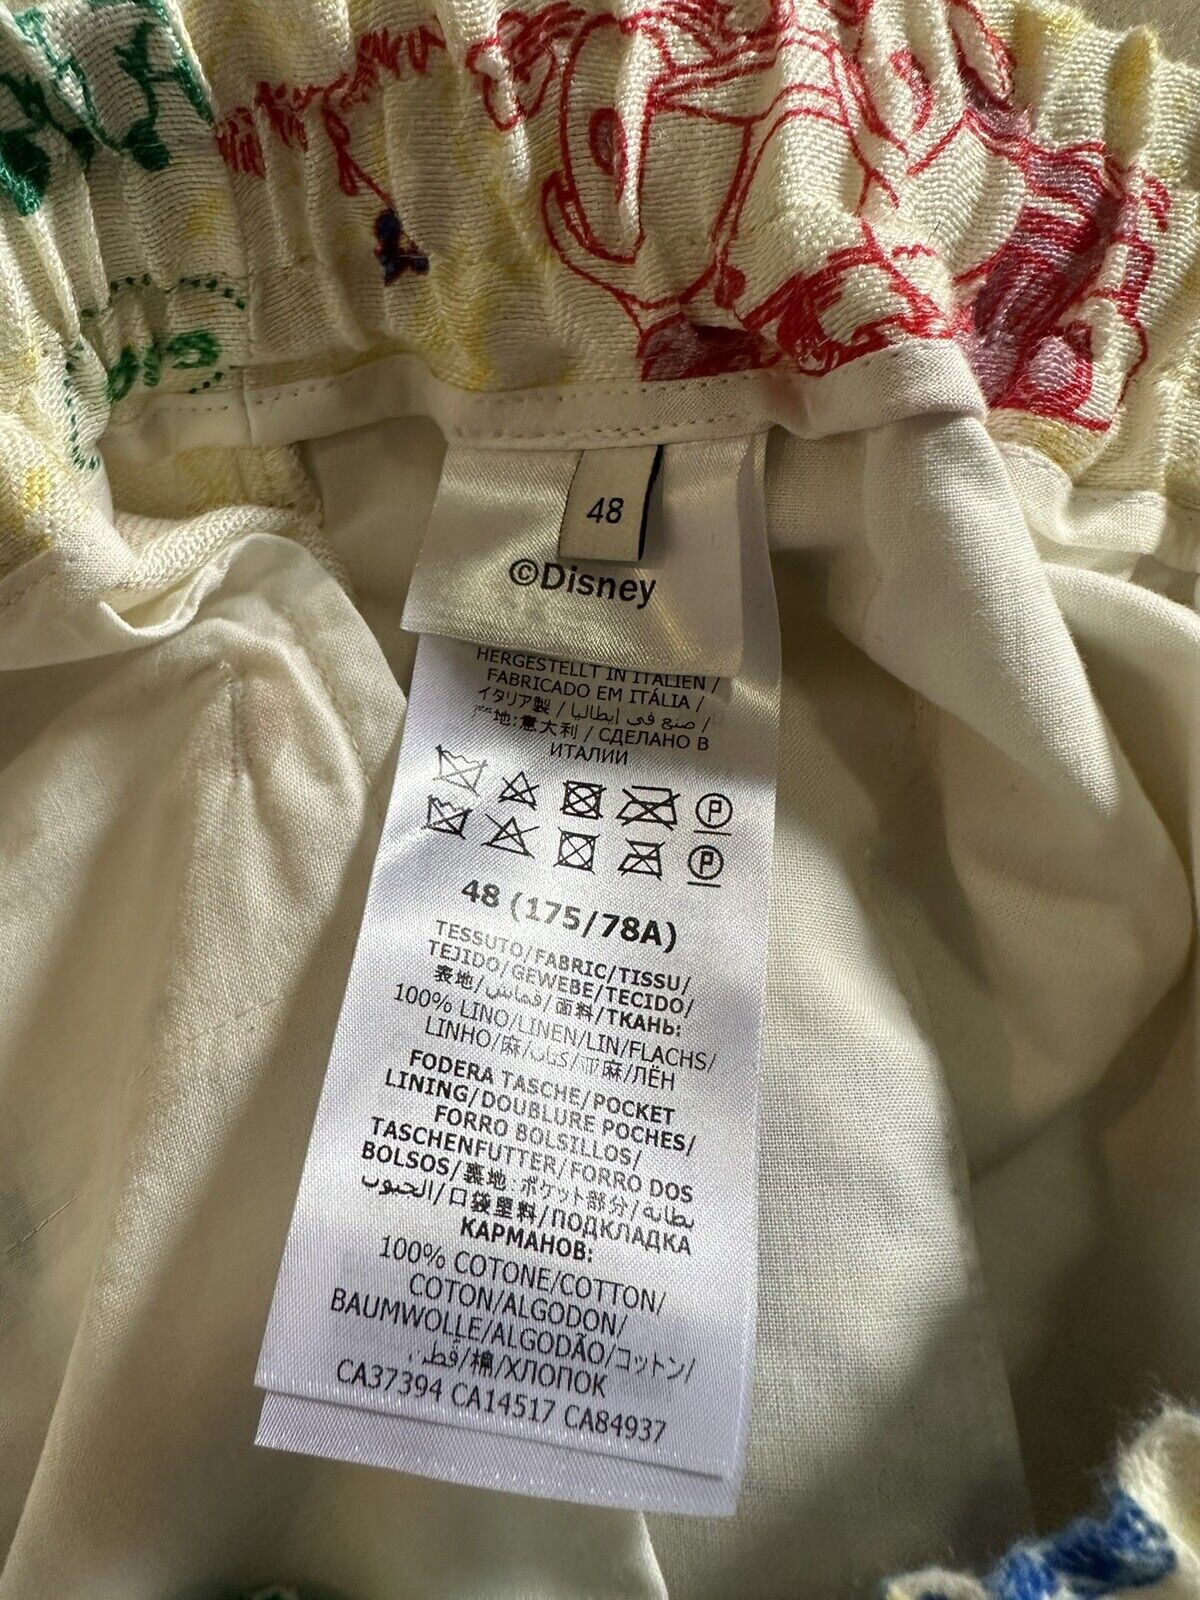 СЗТ $1380 Мужские льняные шорты Gucci Mickey цвета слоновой кости 32 США/48 ЕС